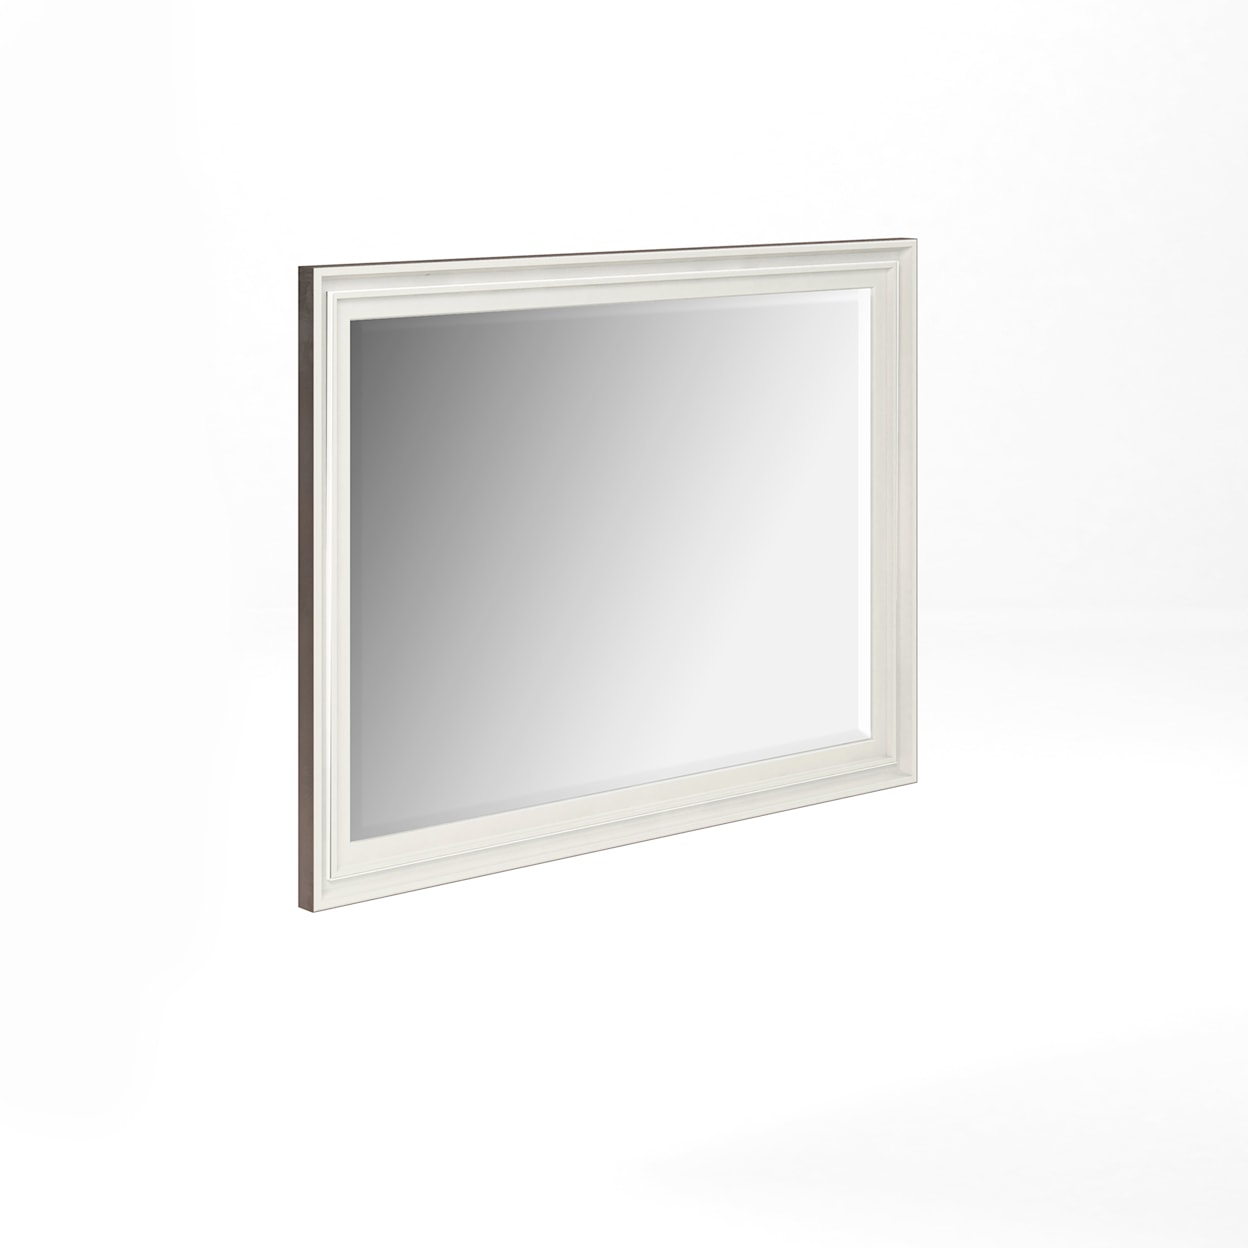 A.R.T. Furniture Inc Blanc Mirror